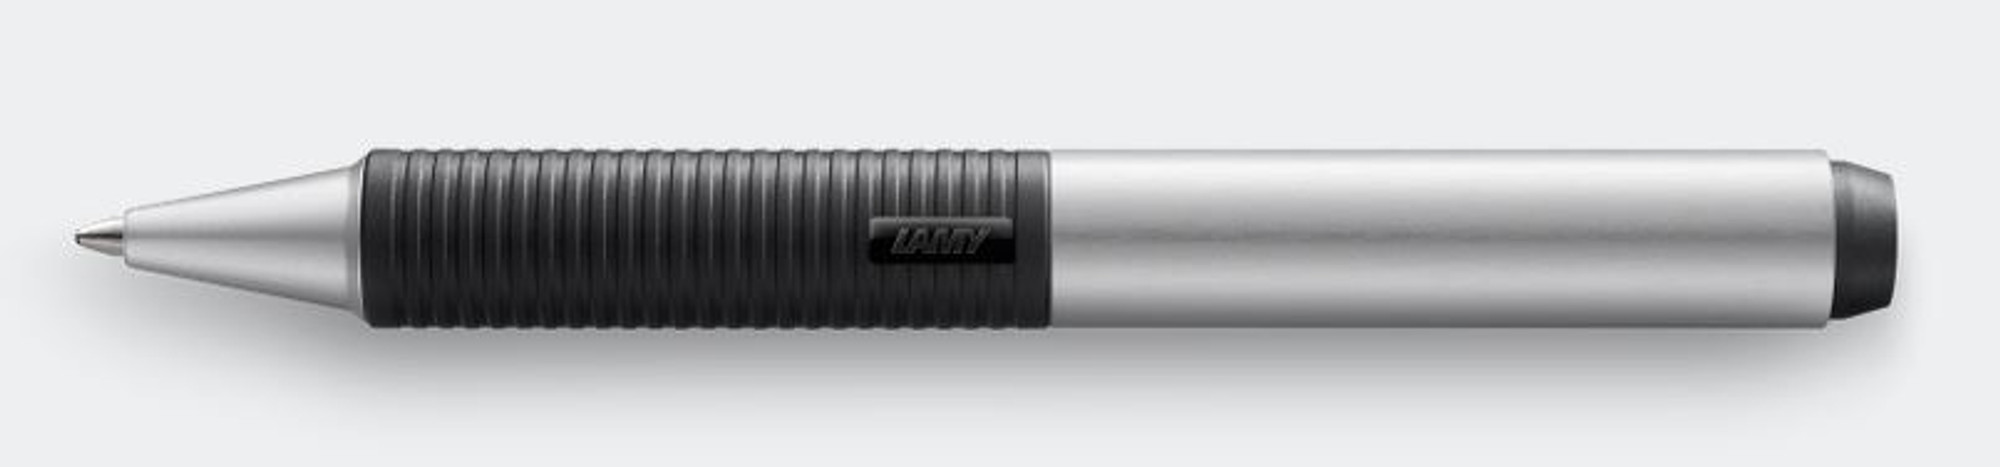 Lamy Screen Stylus + Pen Combo - Silver